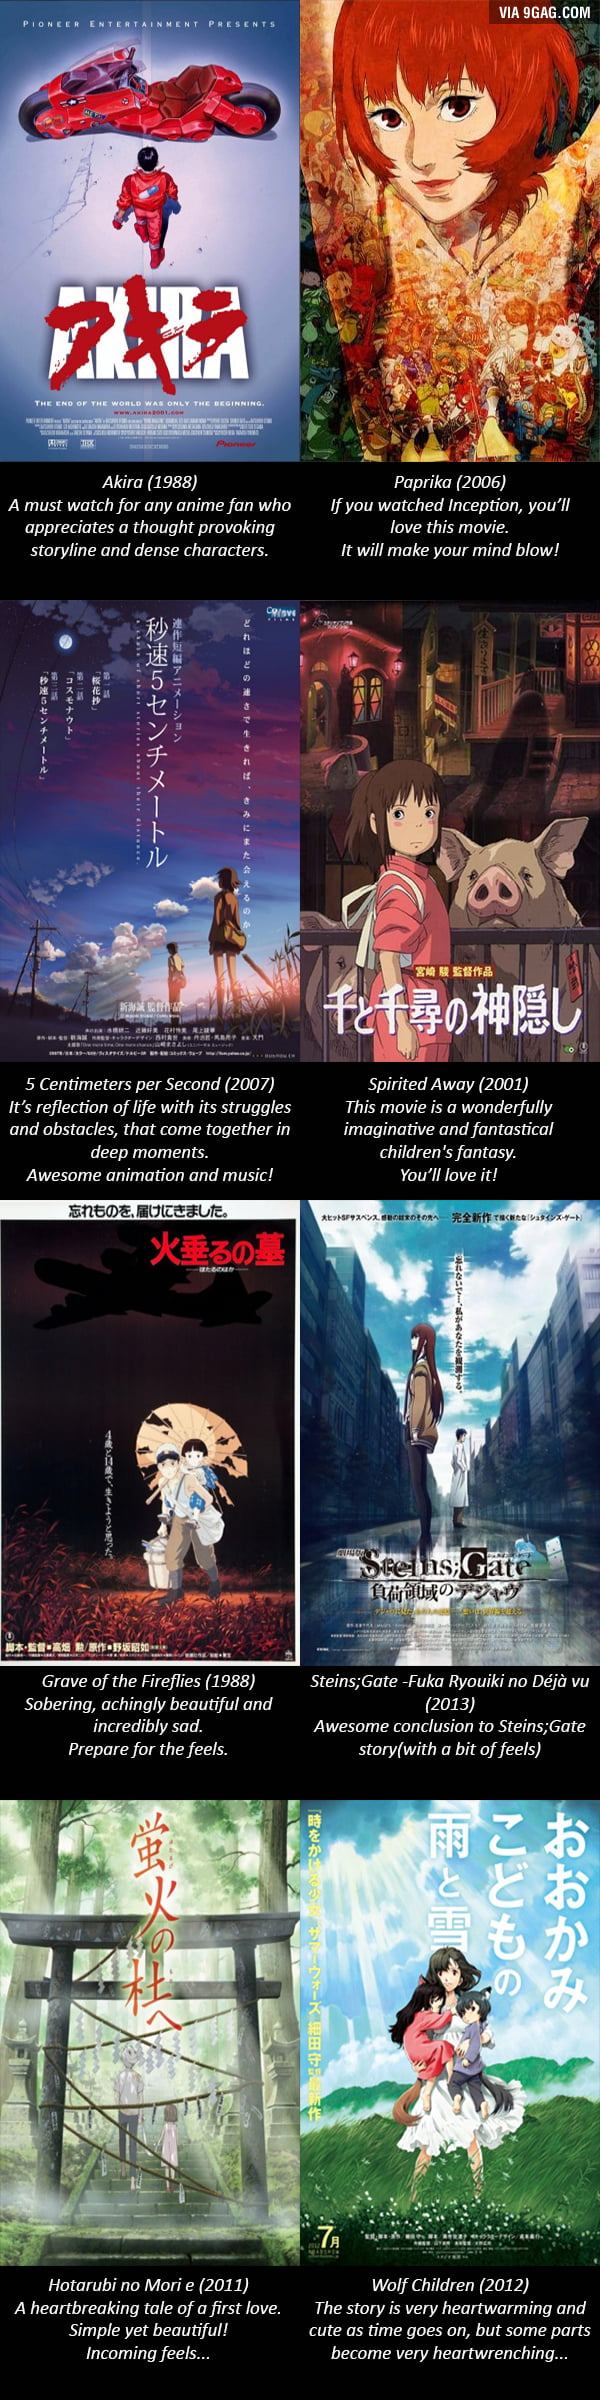 2013 anime movies